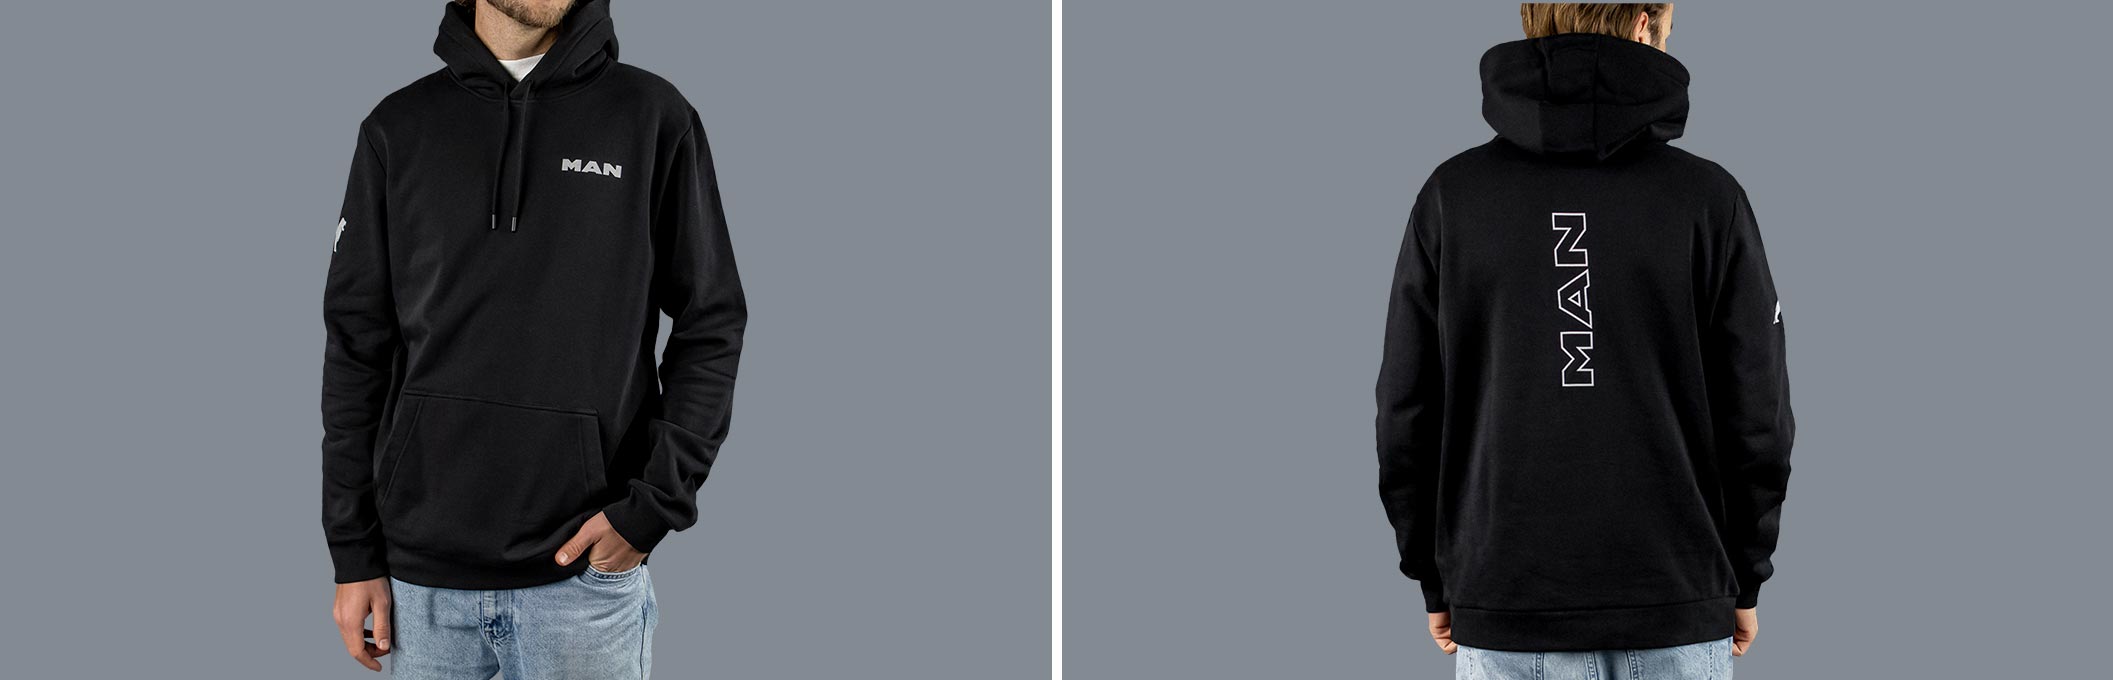 Vorder- und Rückansicht eines schwarzen MAN Hoodies aus der Essential Kollektion mit Logo Print auf dem Ärmel und dem Wort "MAN" auf der Vorderseite